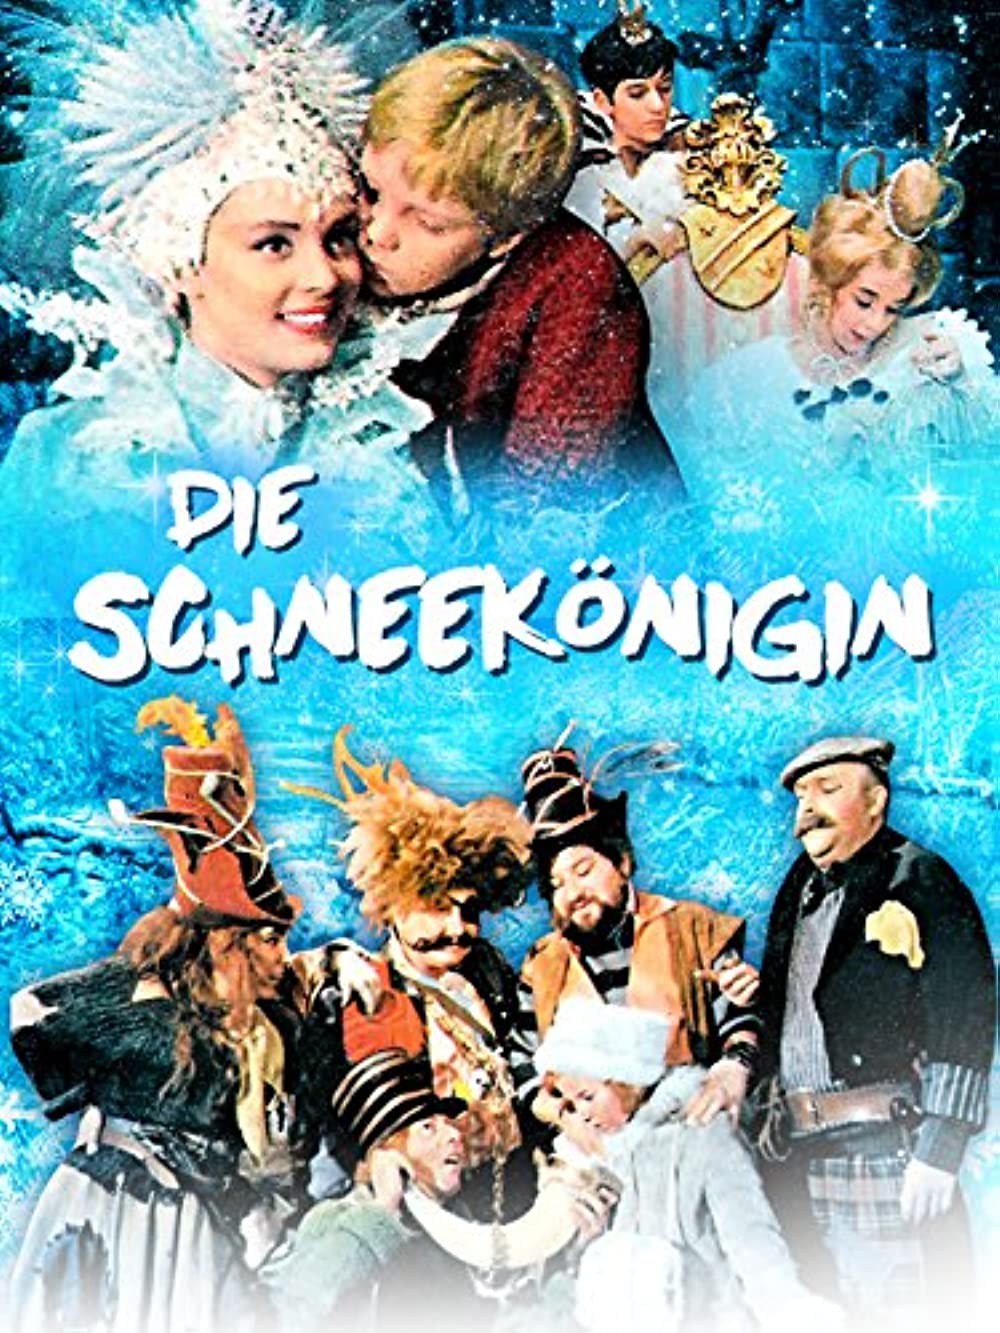 Die Schneekönigin (1986)